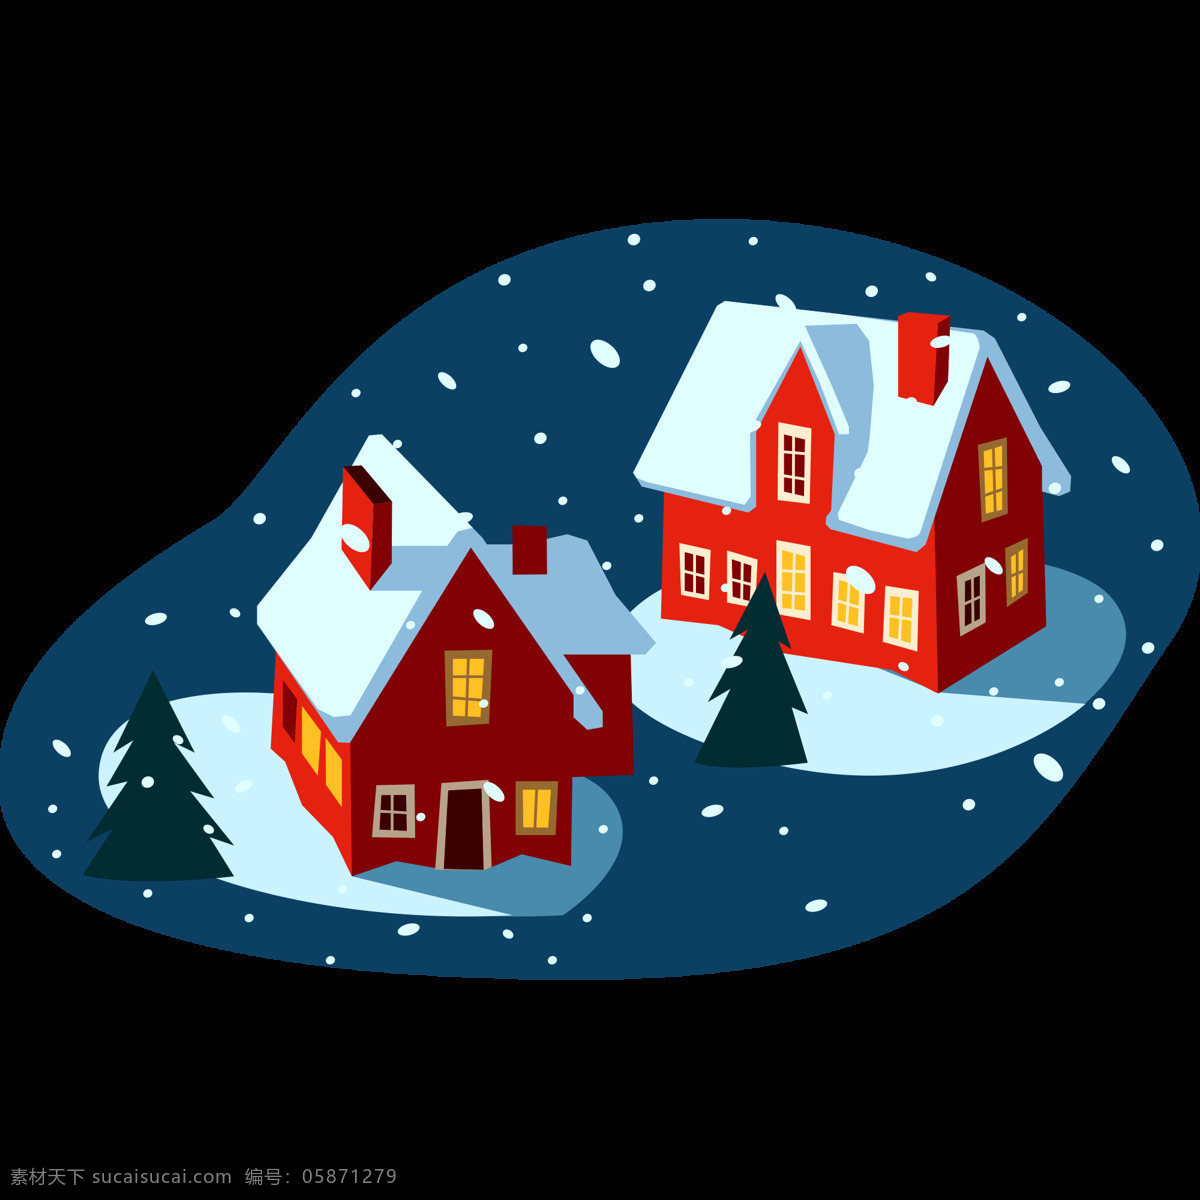 圣诞 晚上 下雪 场景 矢量 图 圣诞树 圣诞节 晚上下雪 下雪场景